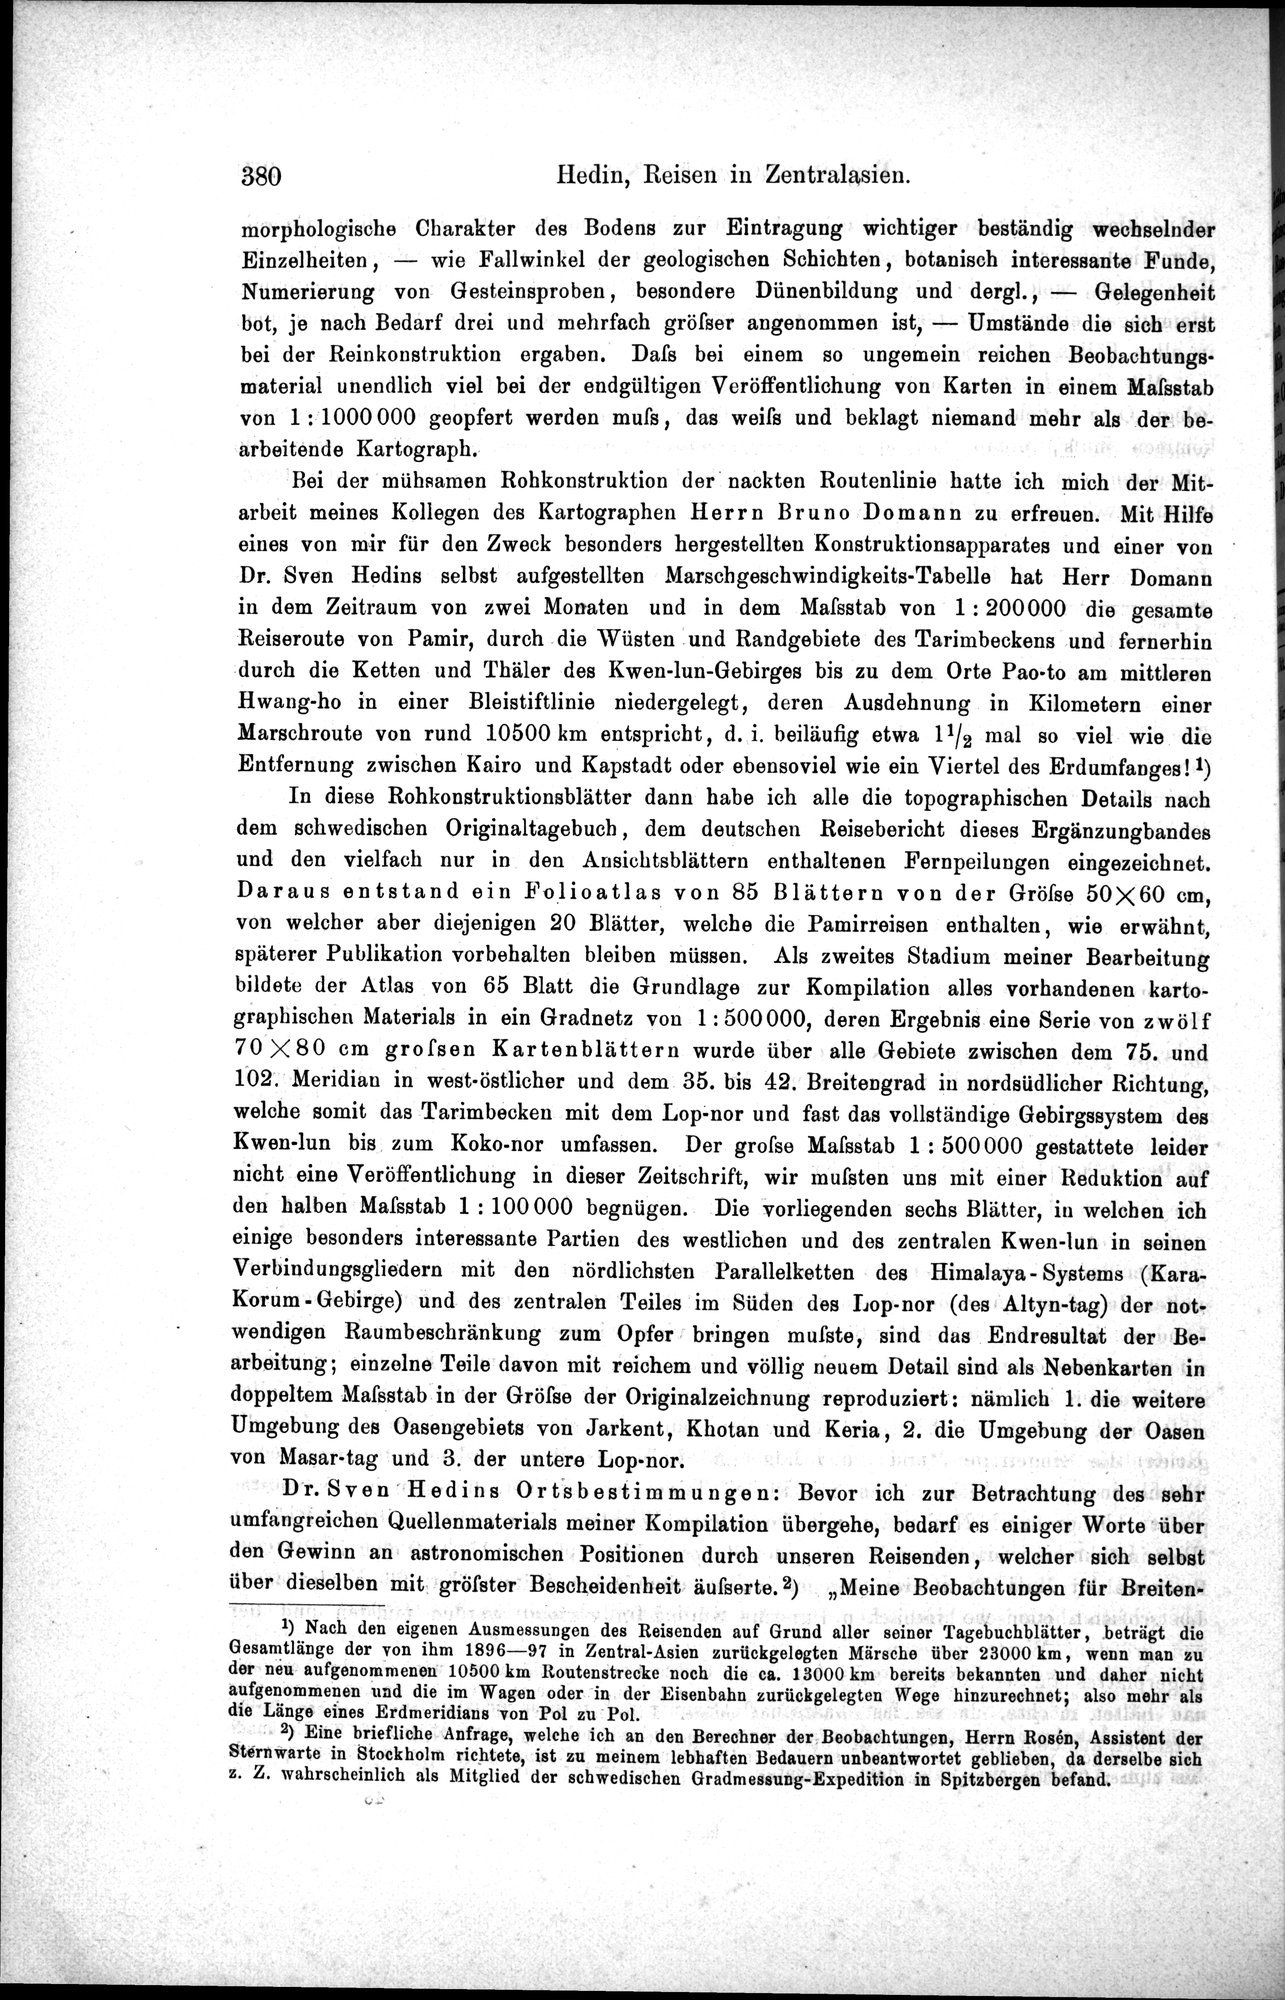 Die Geographische-Wissenschaftlichen Ergebnisse meiner Reisen in Zentralasien, 1894-1897 : vol.1 / Page 392 (Grayscale High Resolution Image)